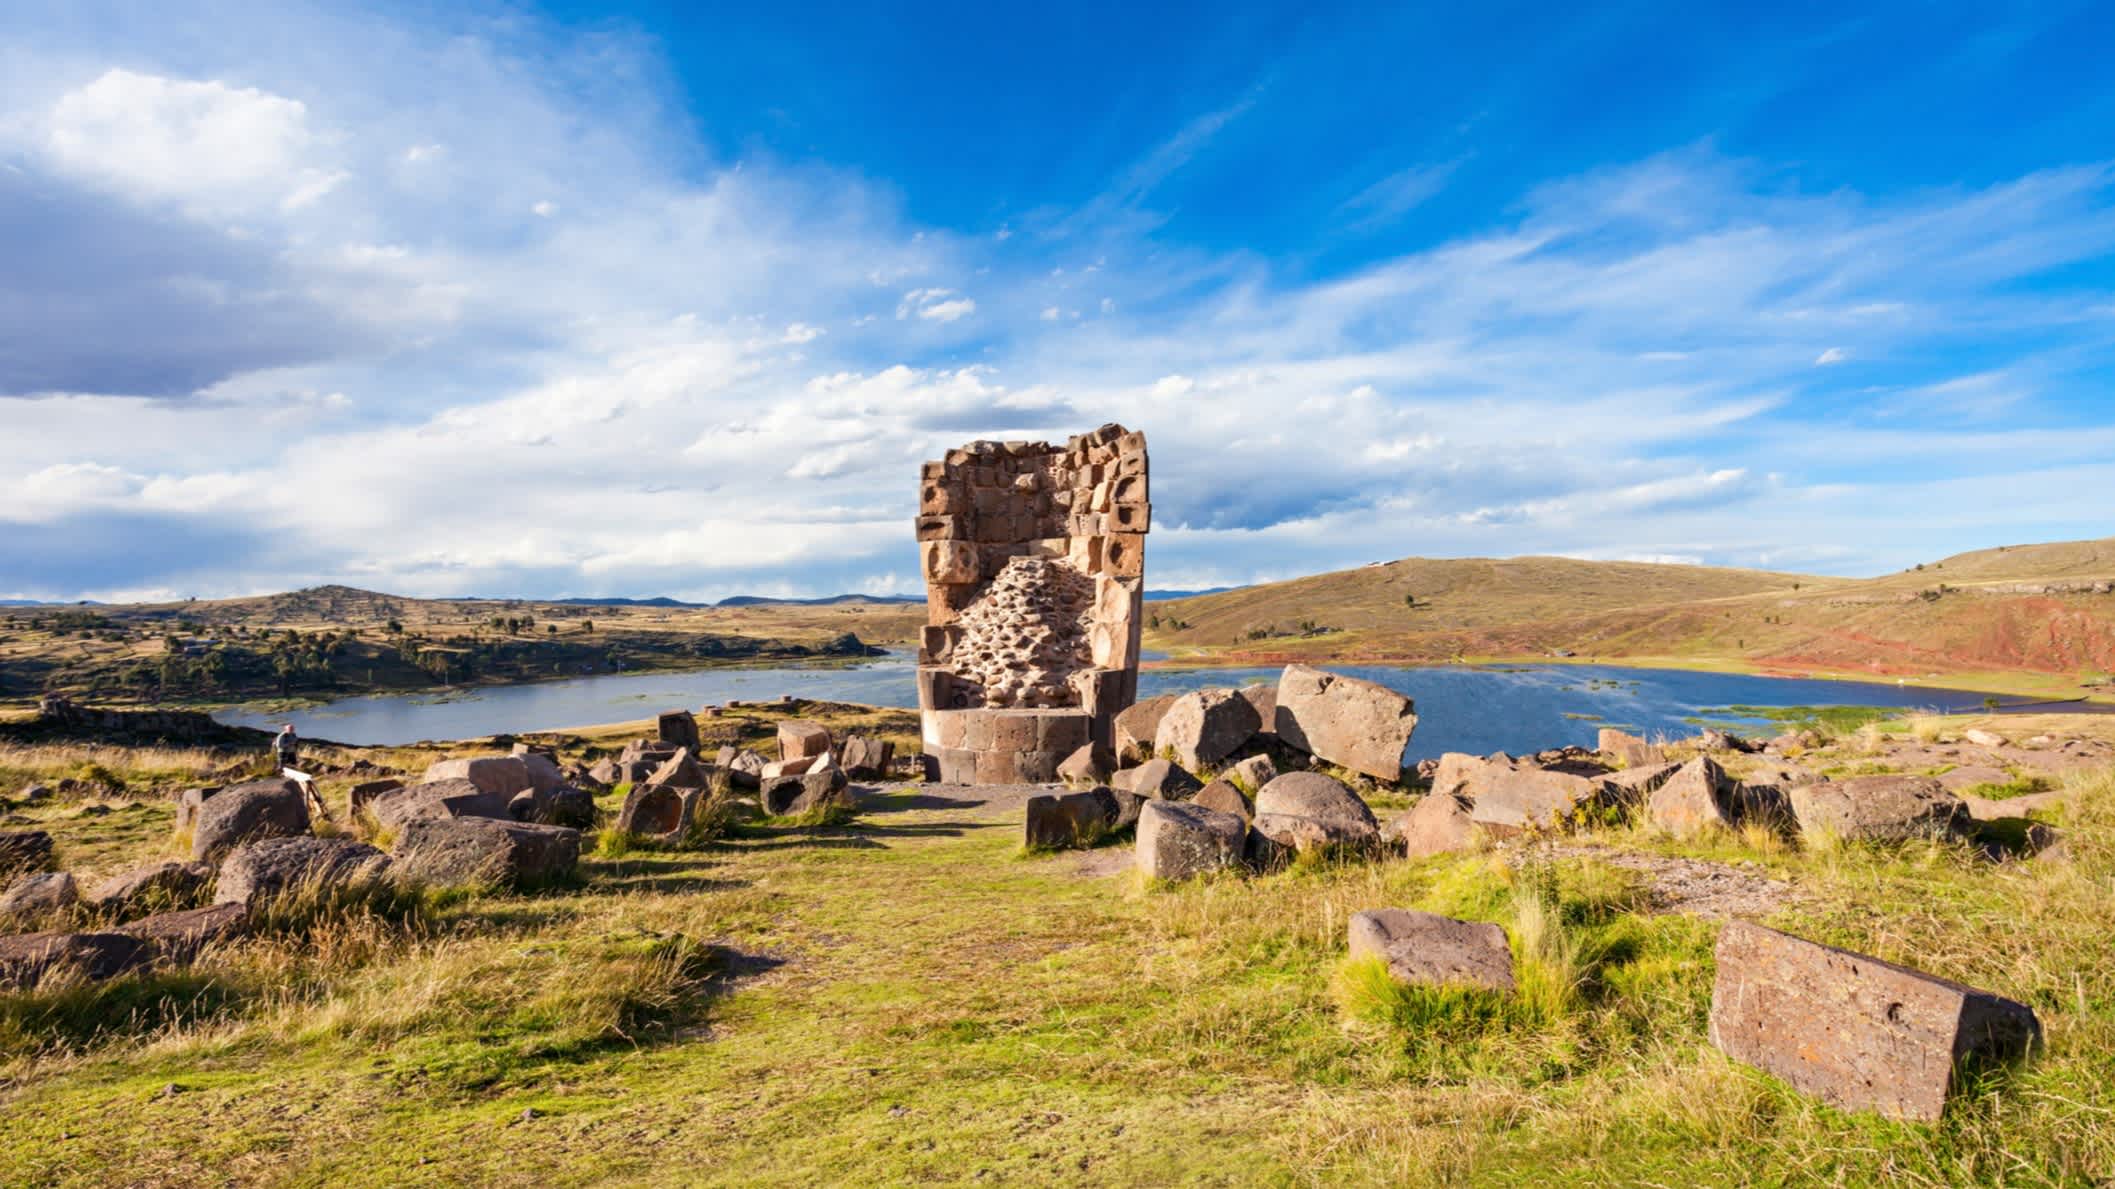 Sillustani est un site funéraire pré-inca situé sur les rives du lac Umayo, près de Puno au Pérou.